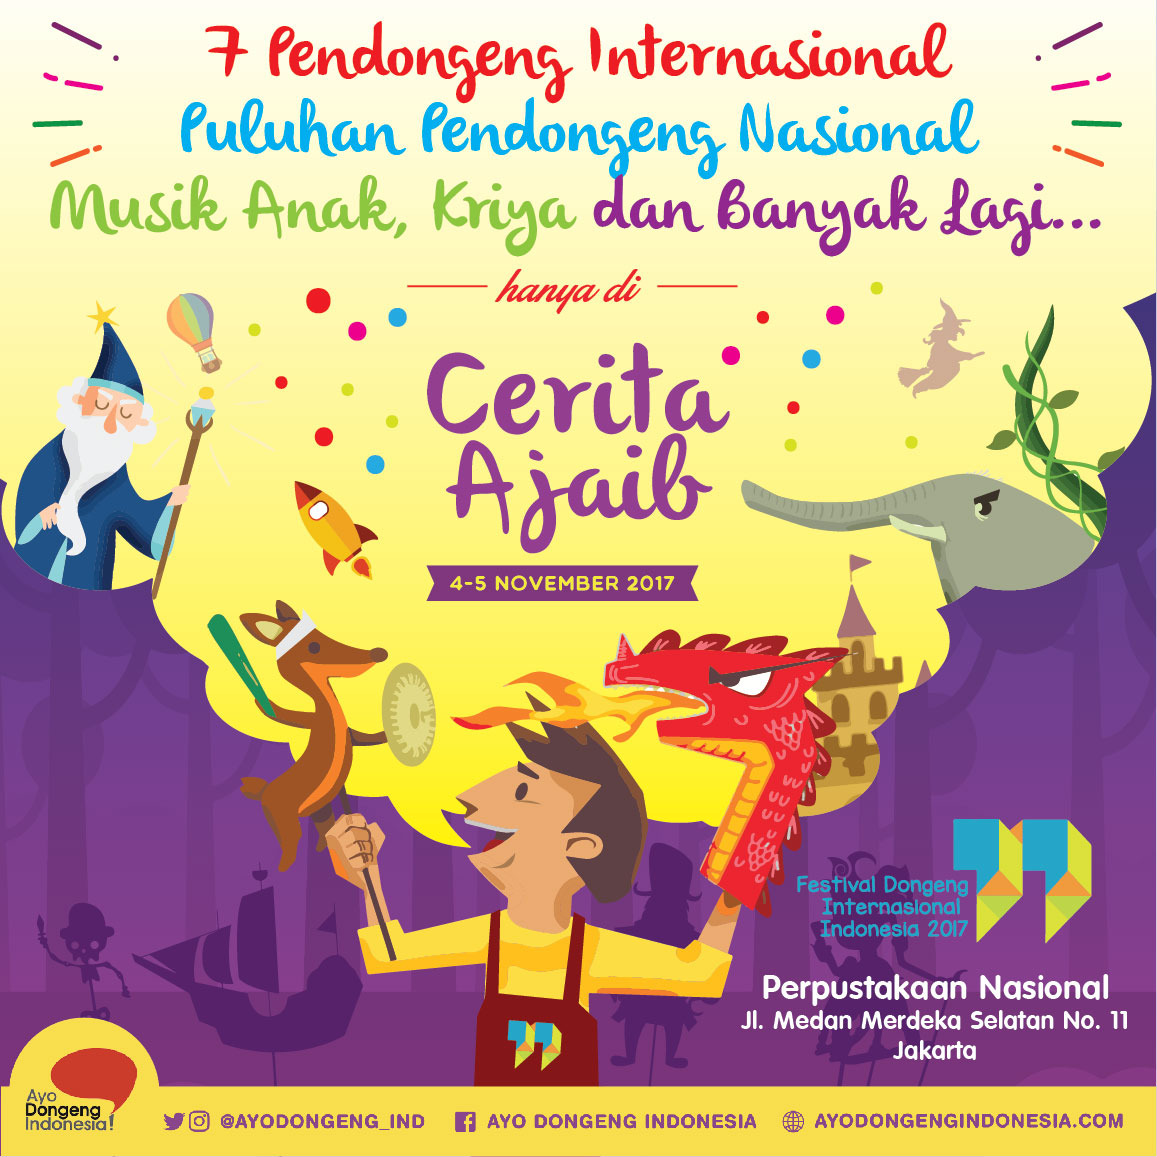 Kembali ke Masa yang Penuh Imajinasi, Festival Dongeng Internasional Indonesia